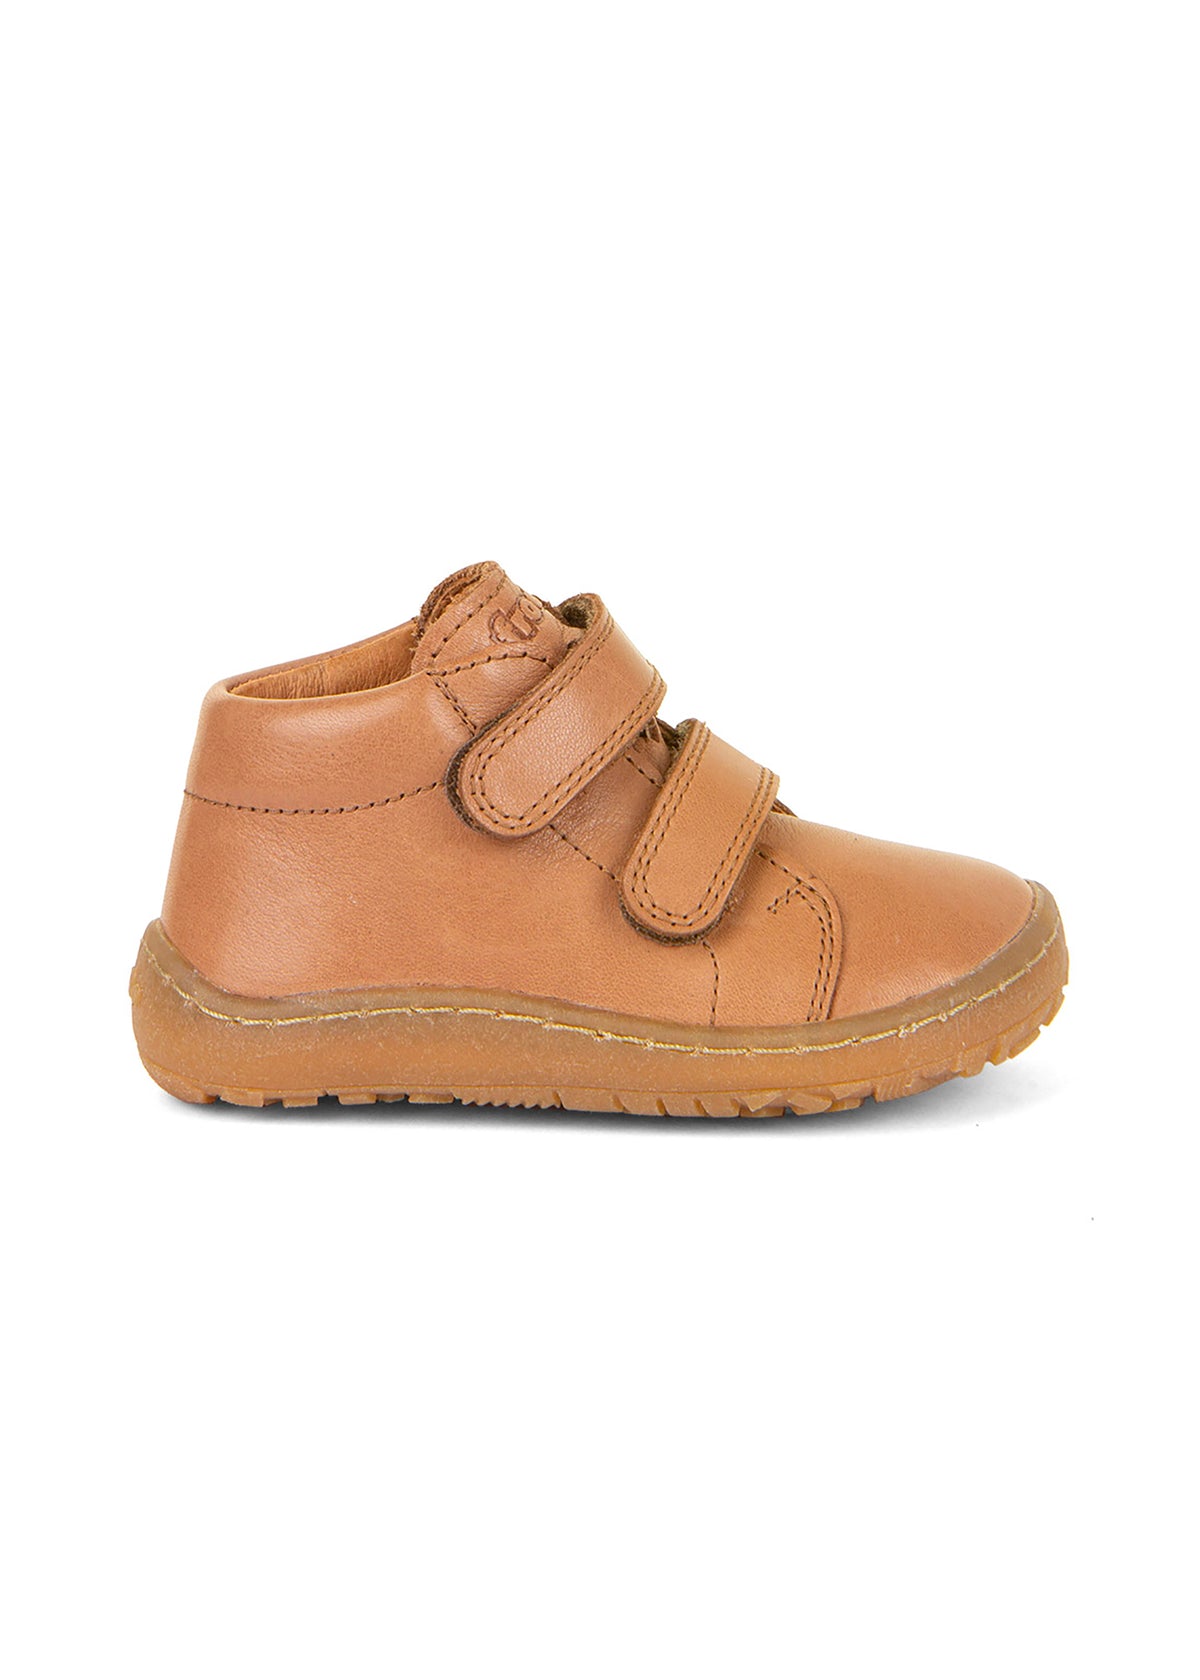 Barfotaskor för barn - brunt läder, Barefoot First Step